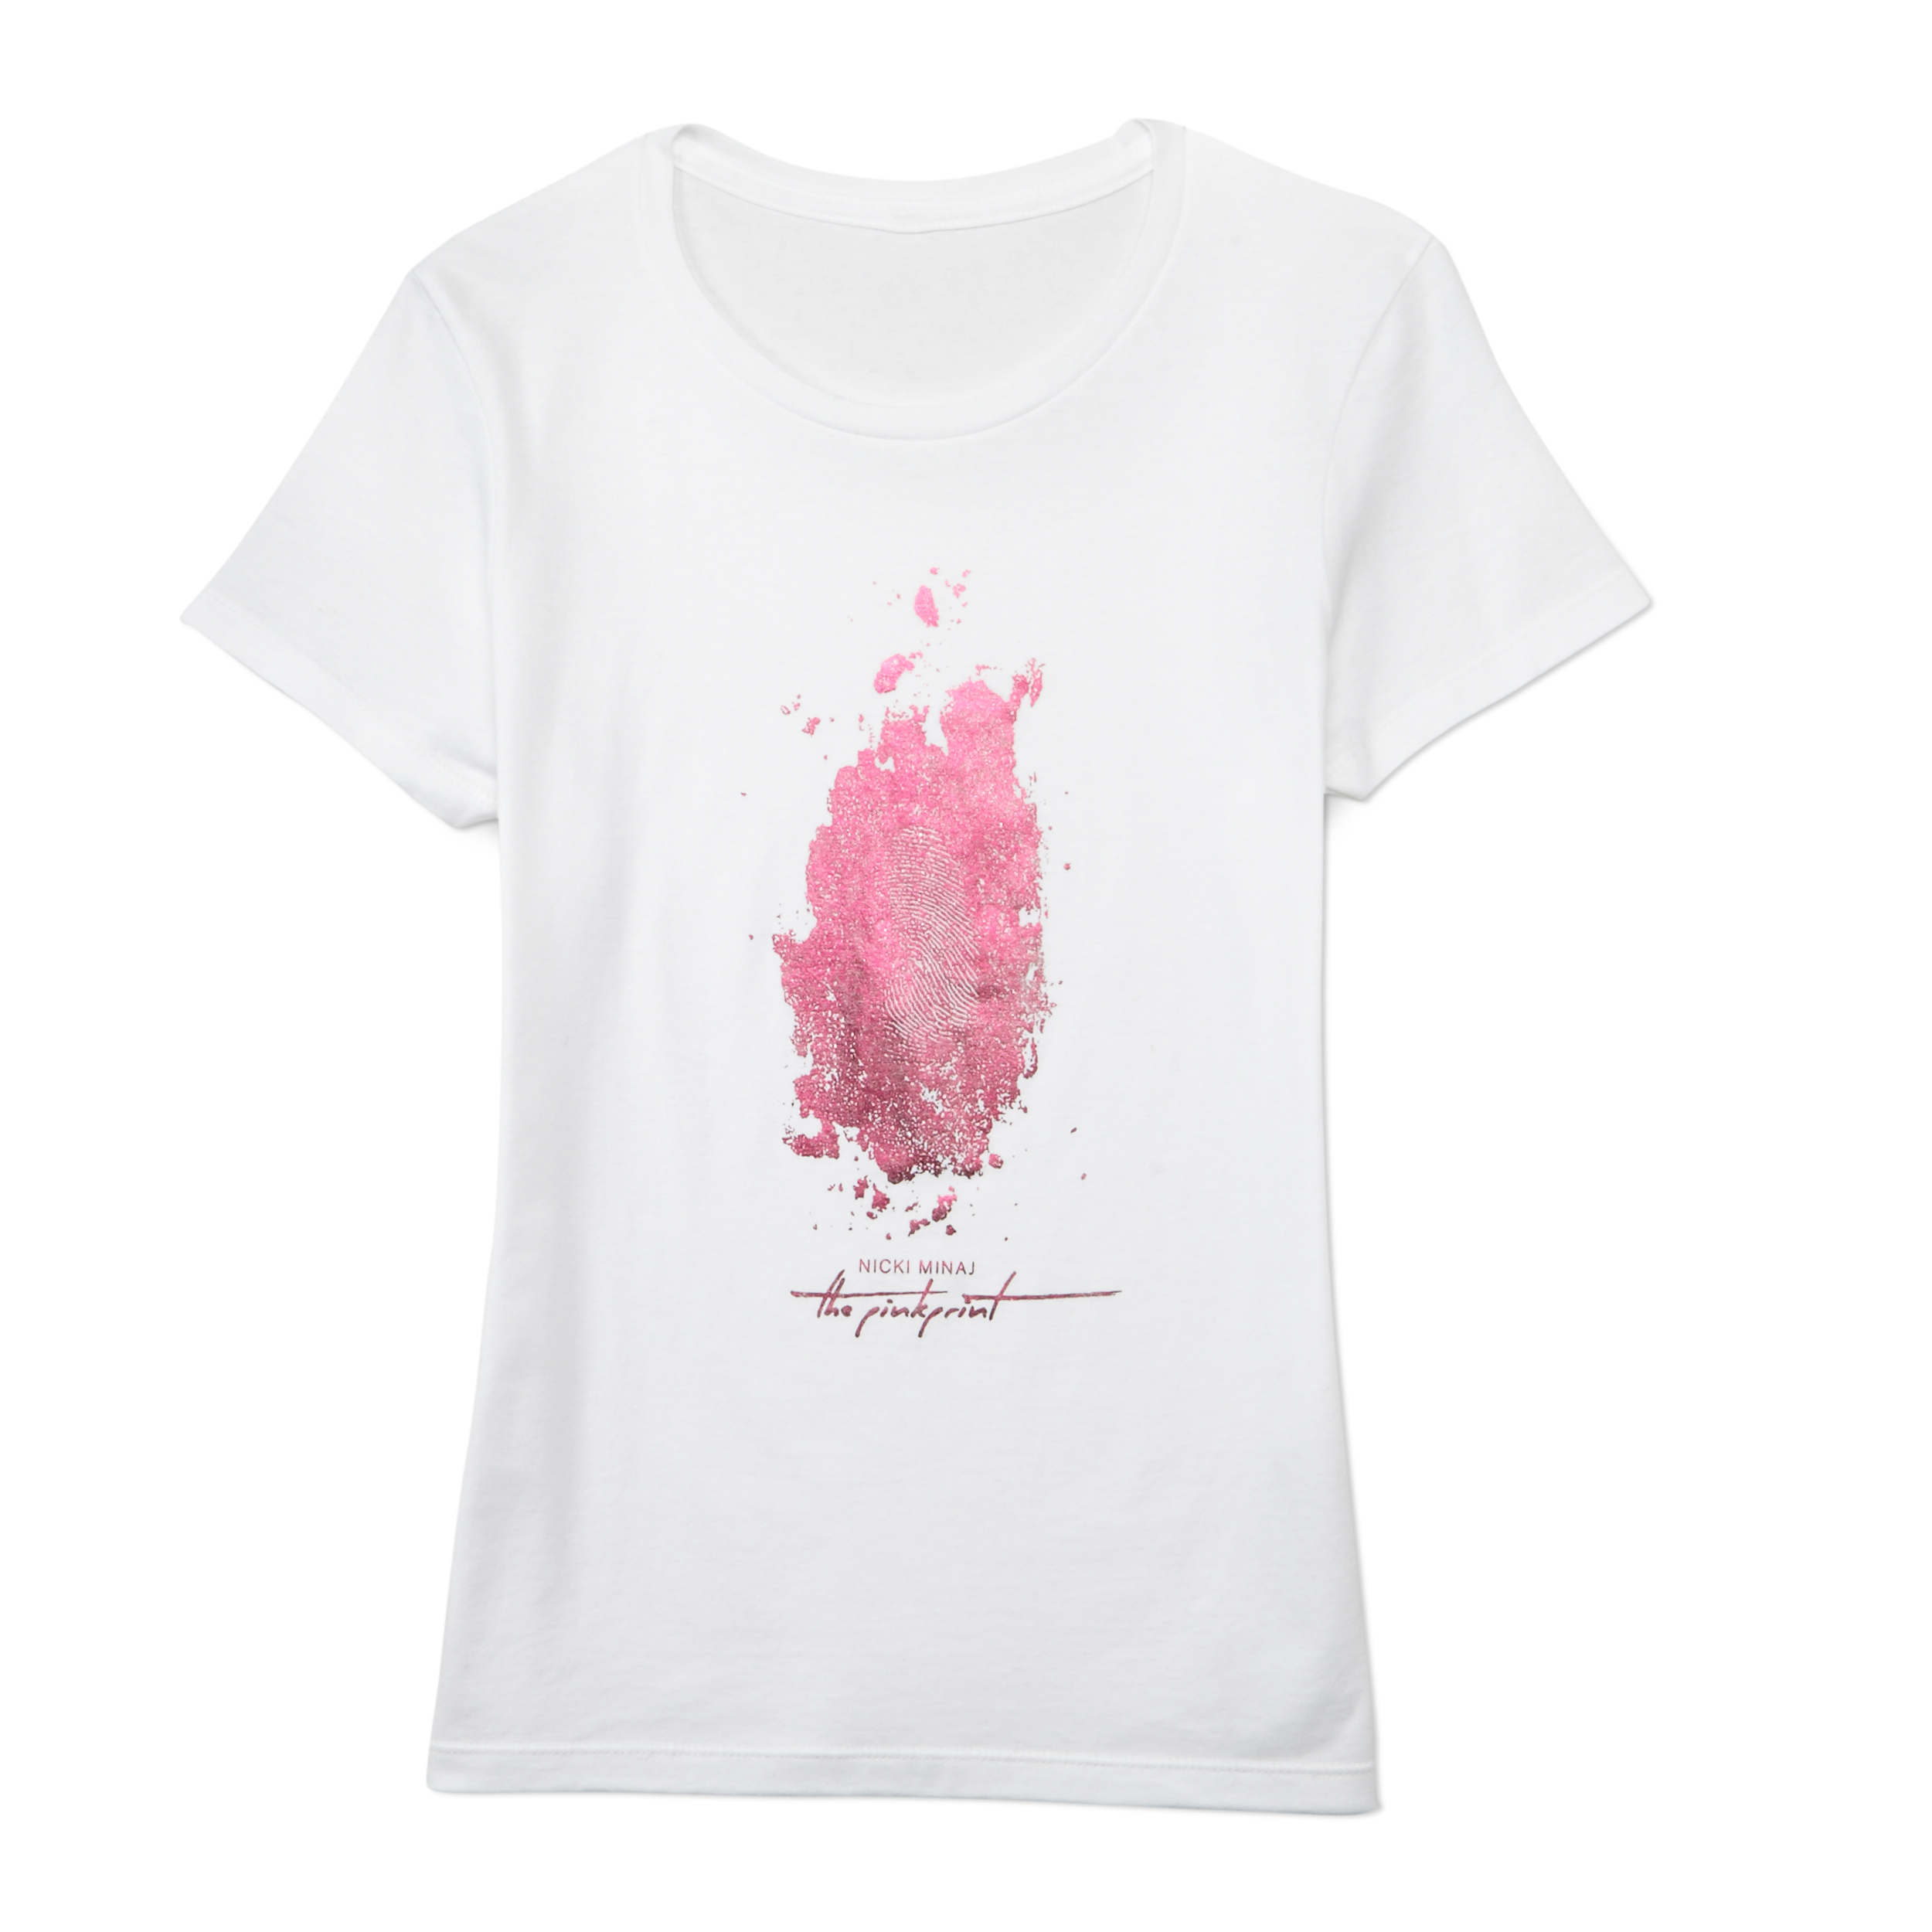 Nicki Minaj Women's Graphic T-Shirt - The Pinkprint